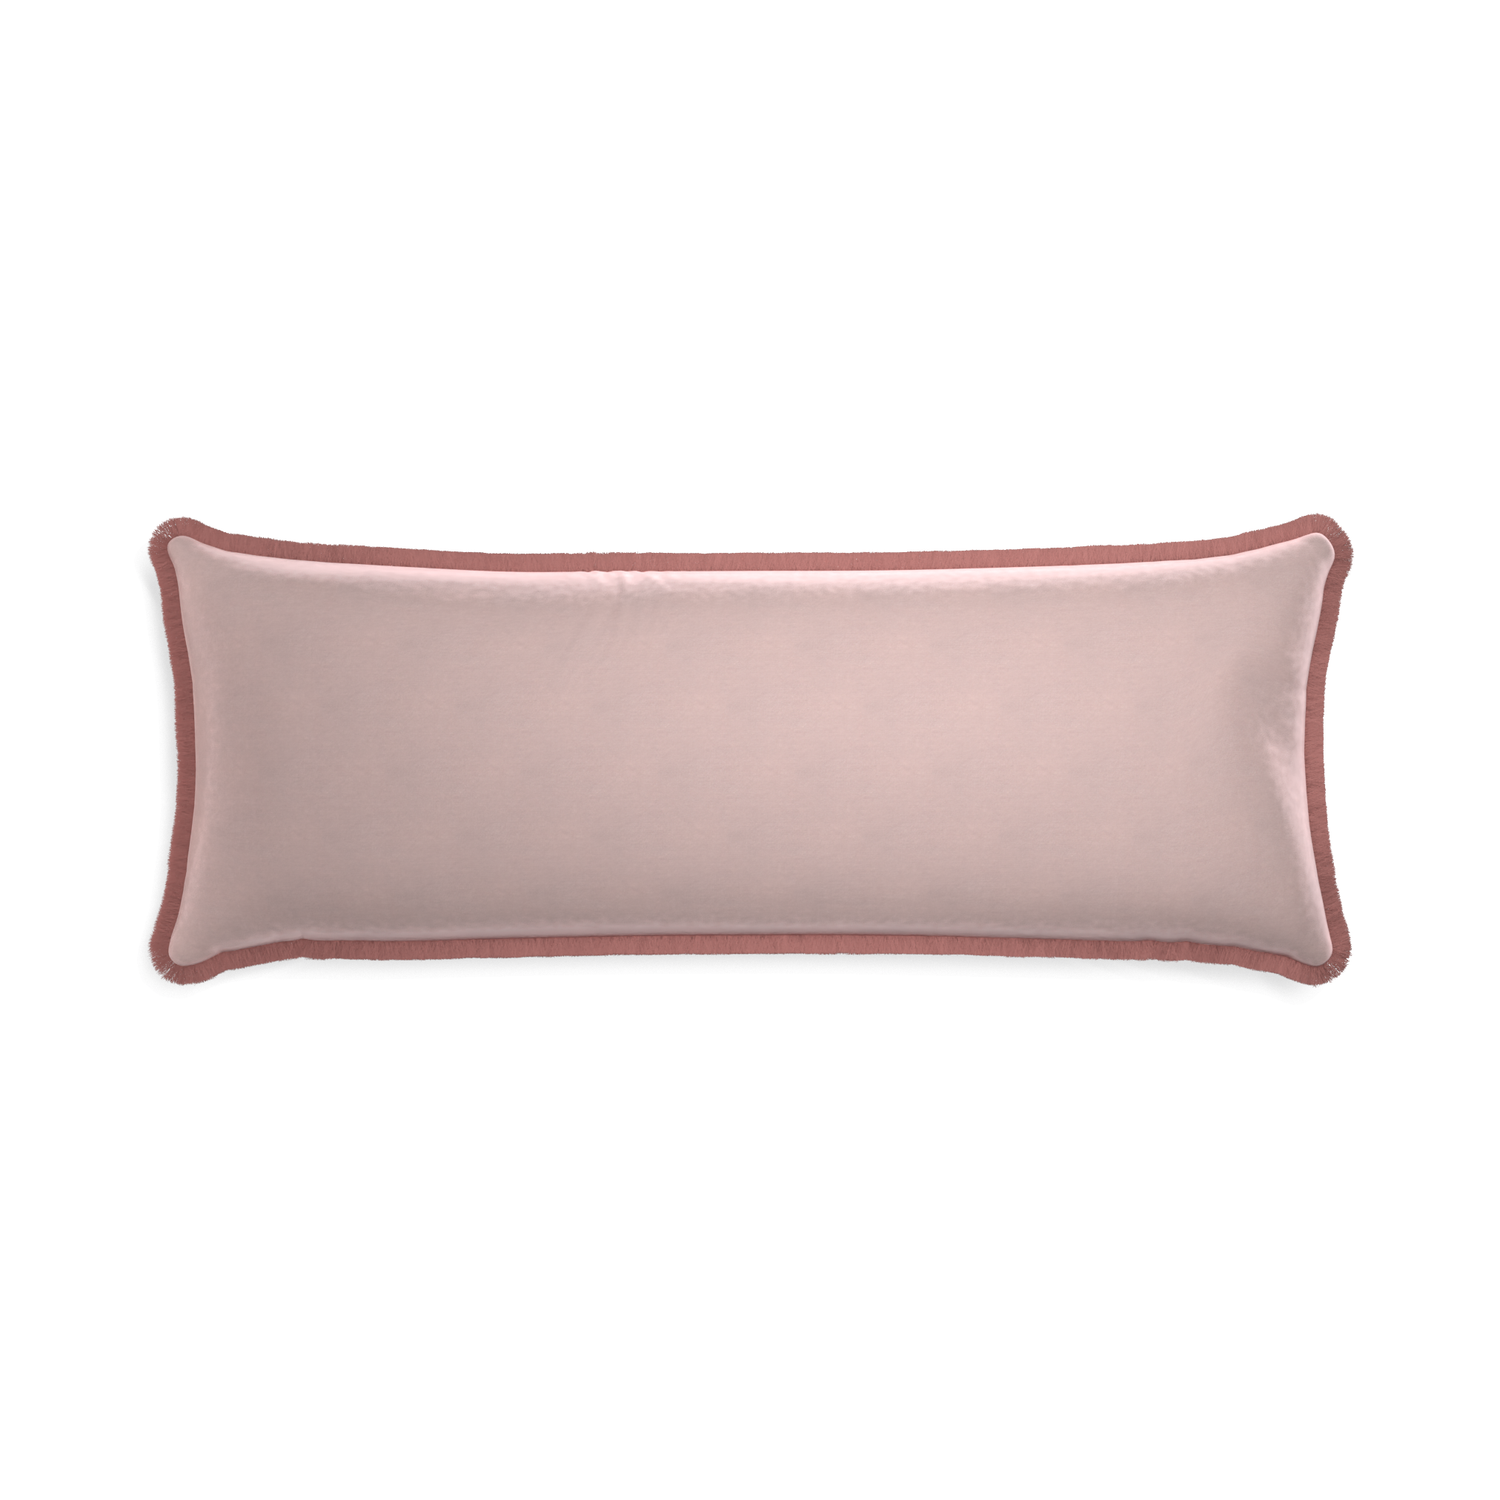 rectangle light pink velvet pillow with dusty rose fringe 